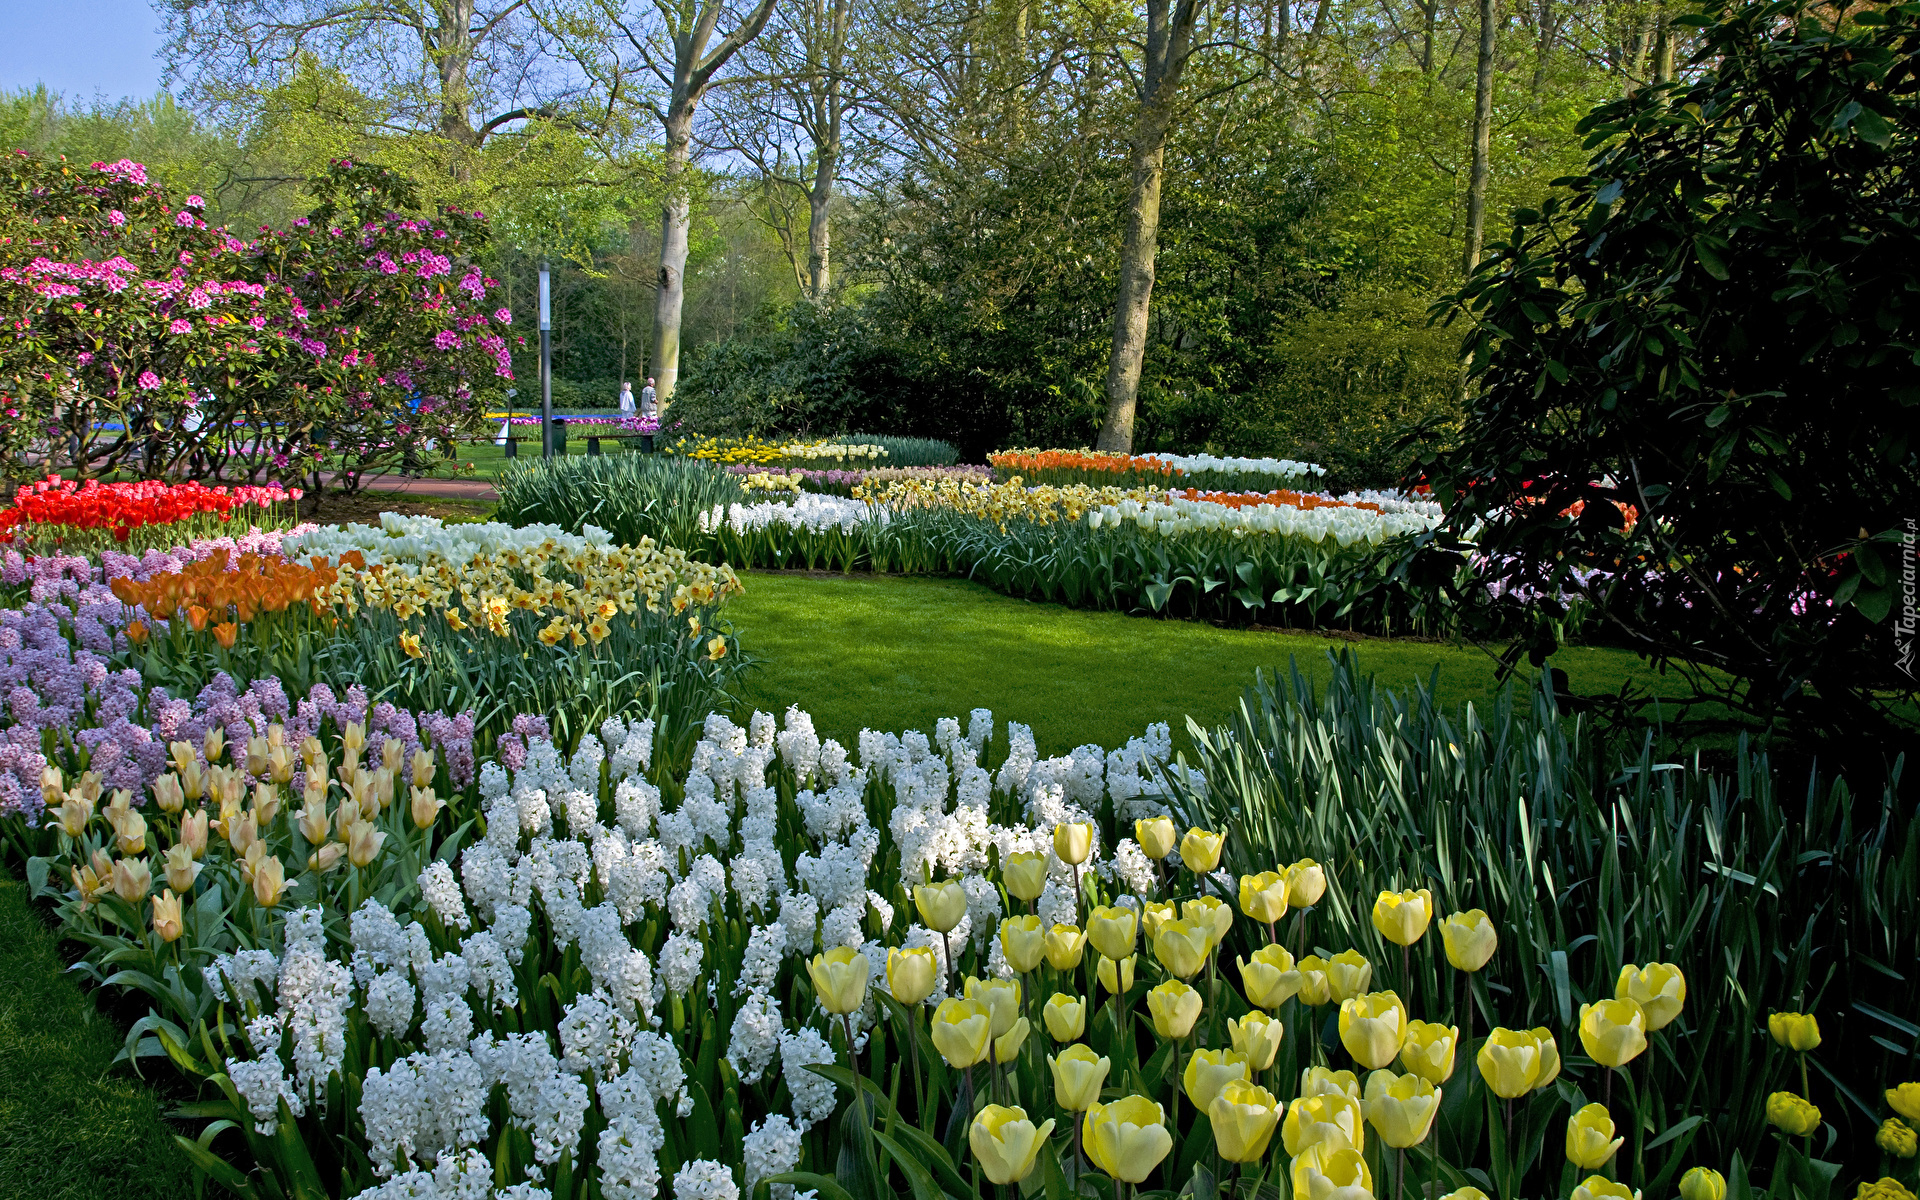 Wiosna, Park, Ogród, Kwiaty, Tulipany, Hiacynty, Drzewa, Krzewy, Keukenhof, Holandia